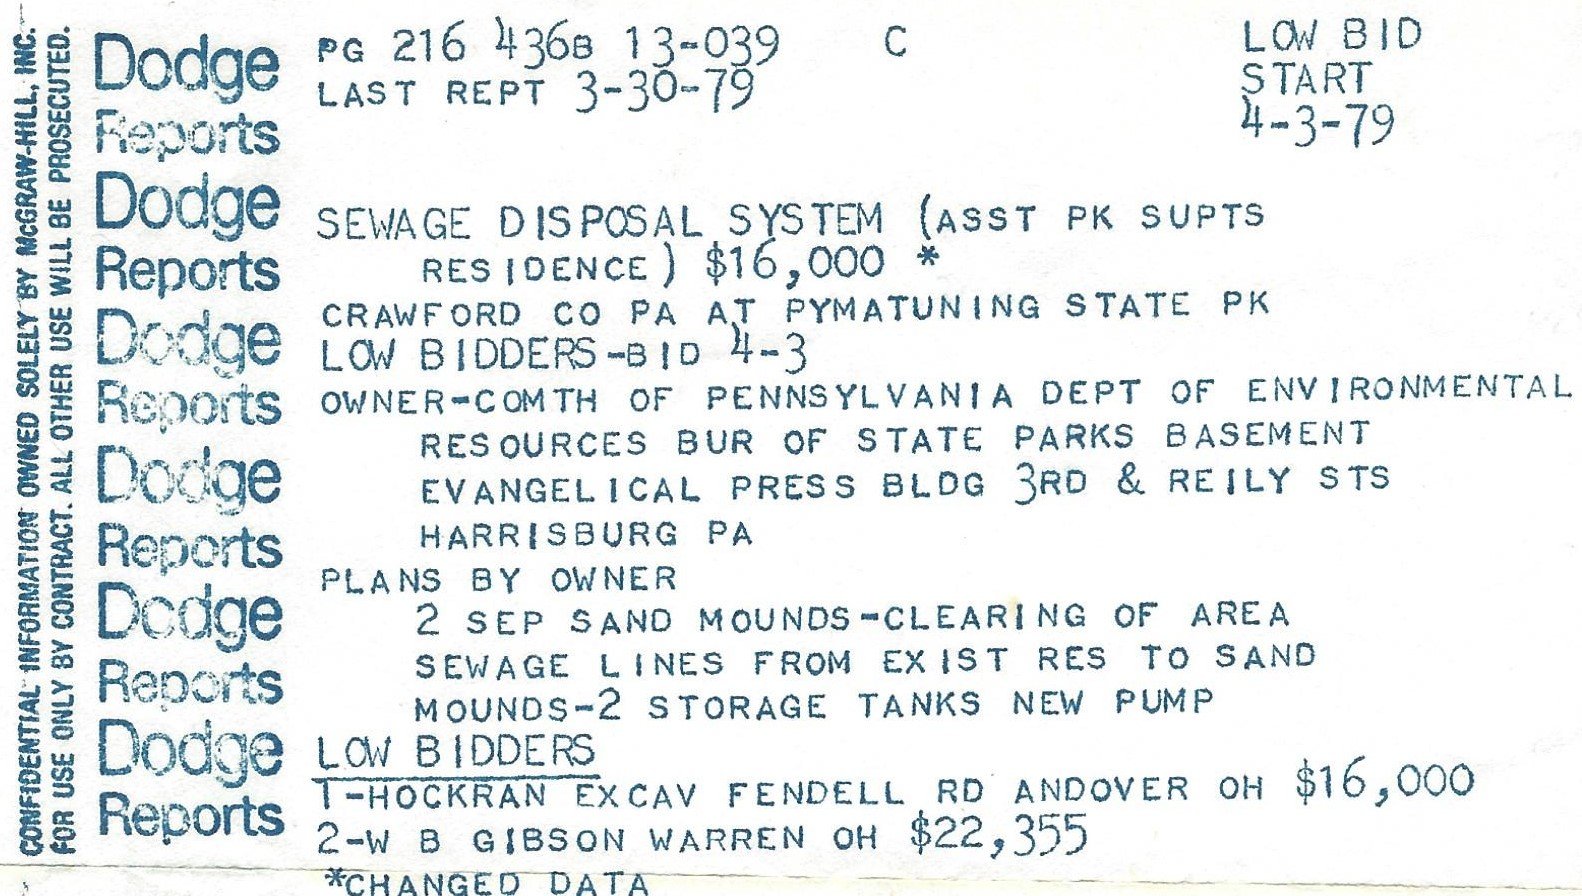 Dodge 4-3-79 PA Pymatuning Park Sewer